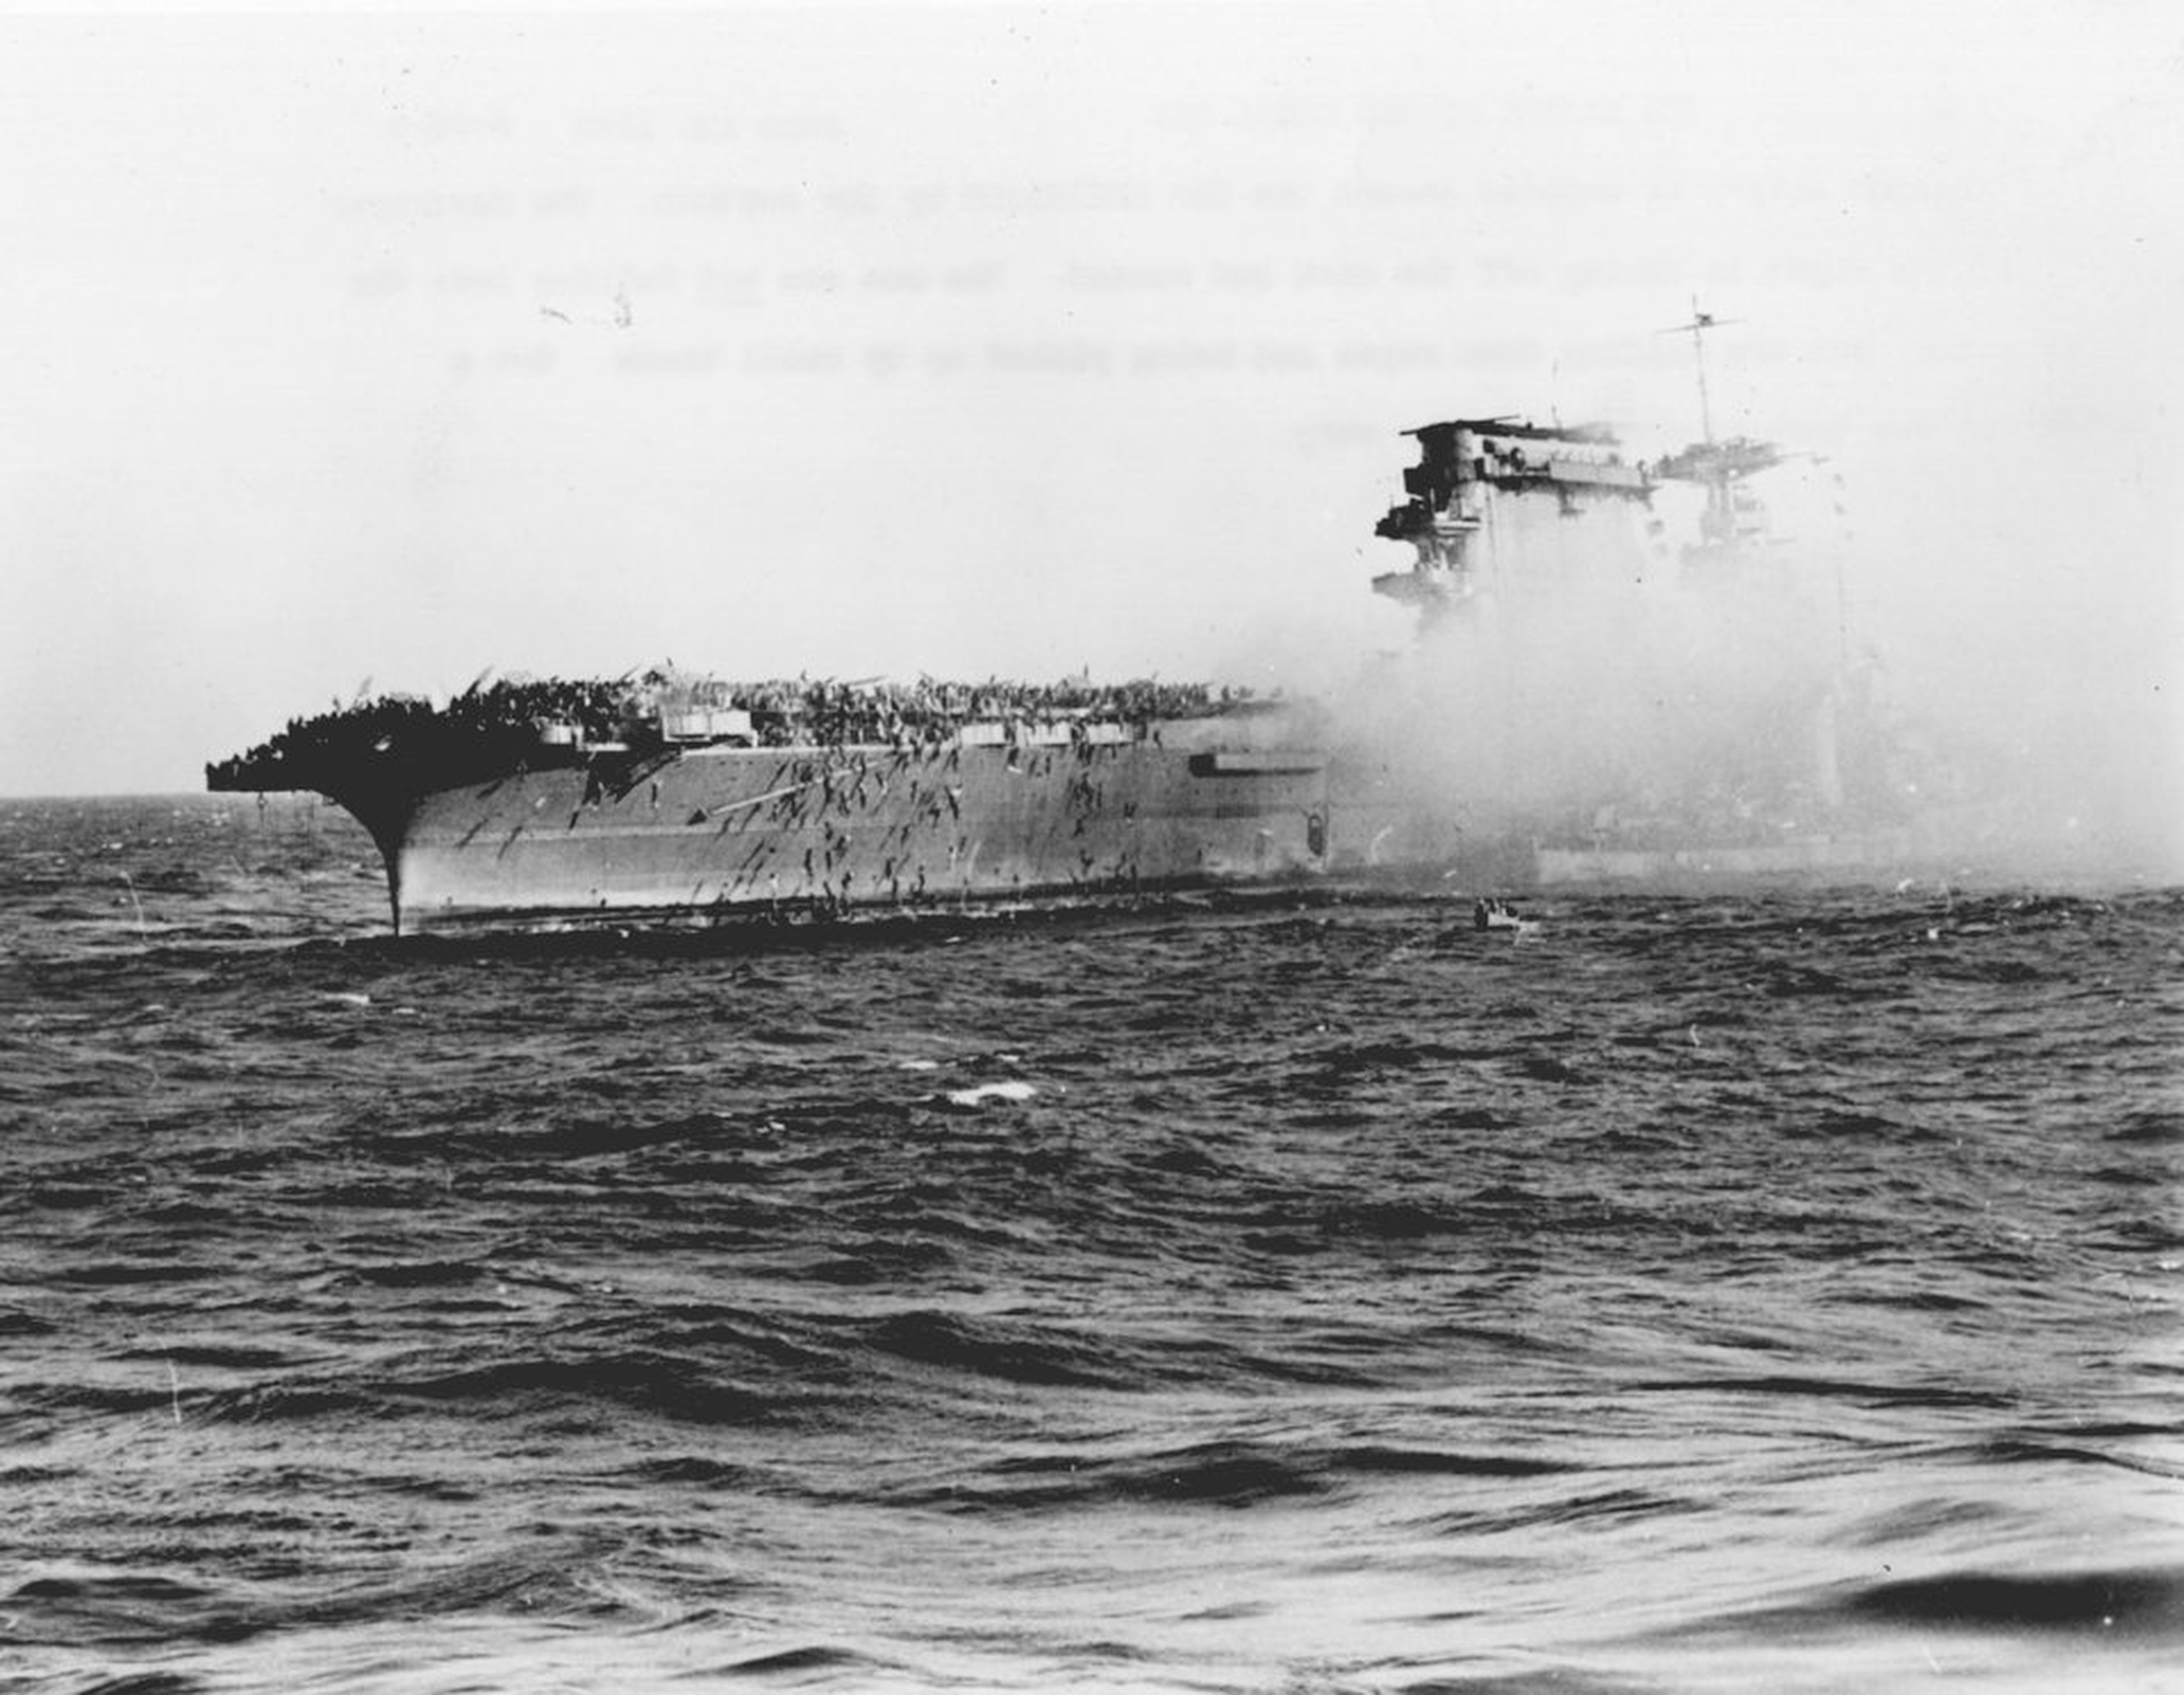 La tripulación superviviente del USS Lexington, hundida por los japoneses en el Mar de Coral, abandona el barco. Los marineros se deslizan por las cuerdas y son recogidos por pequeños botes. El destructor, a la derecha, recoge a los enfermos y heridos.